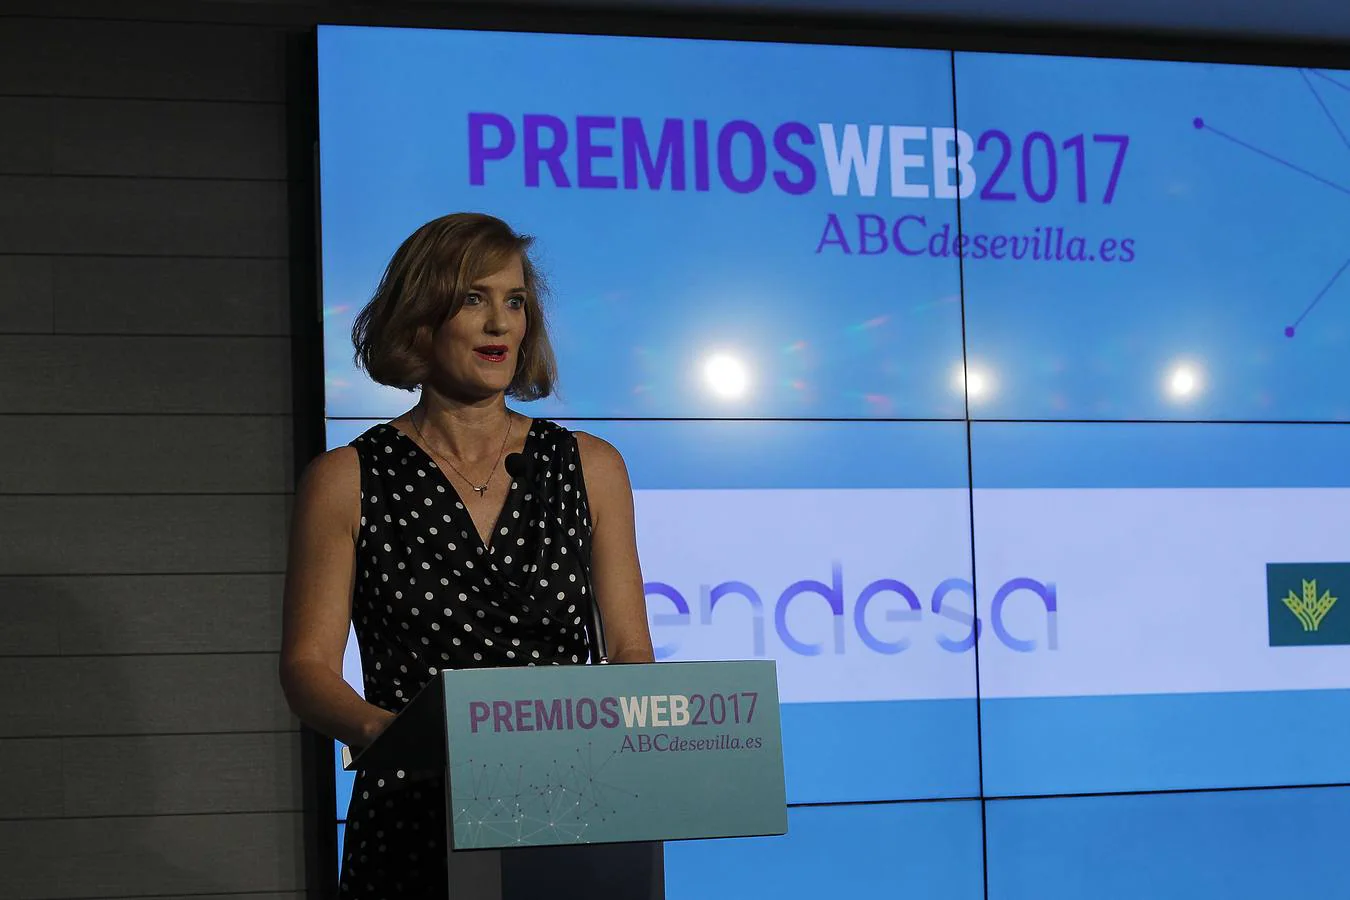 Cristina Camoyán, jefa de Publicidad de ABC y presentadora del acto